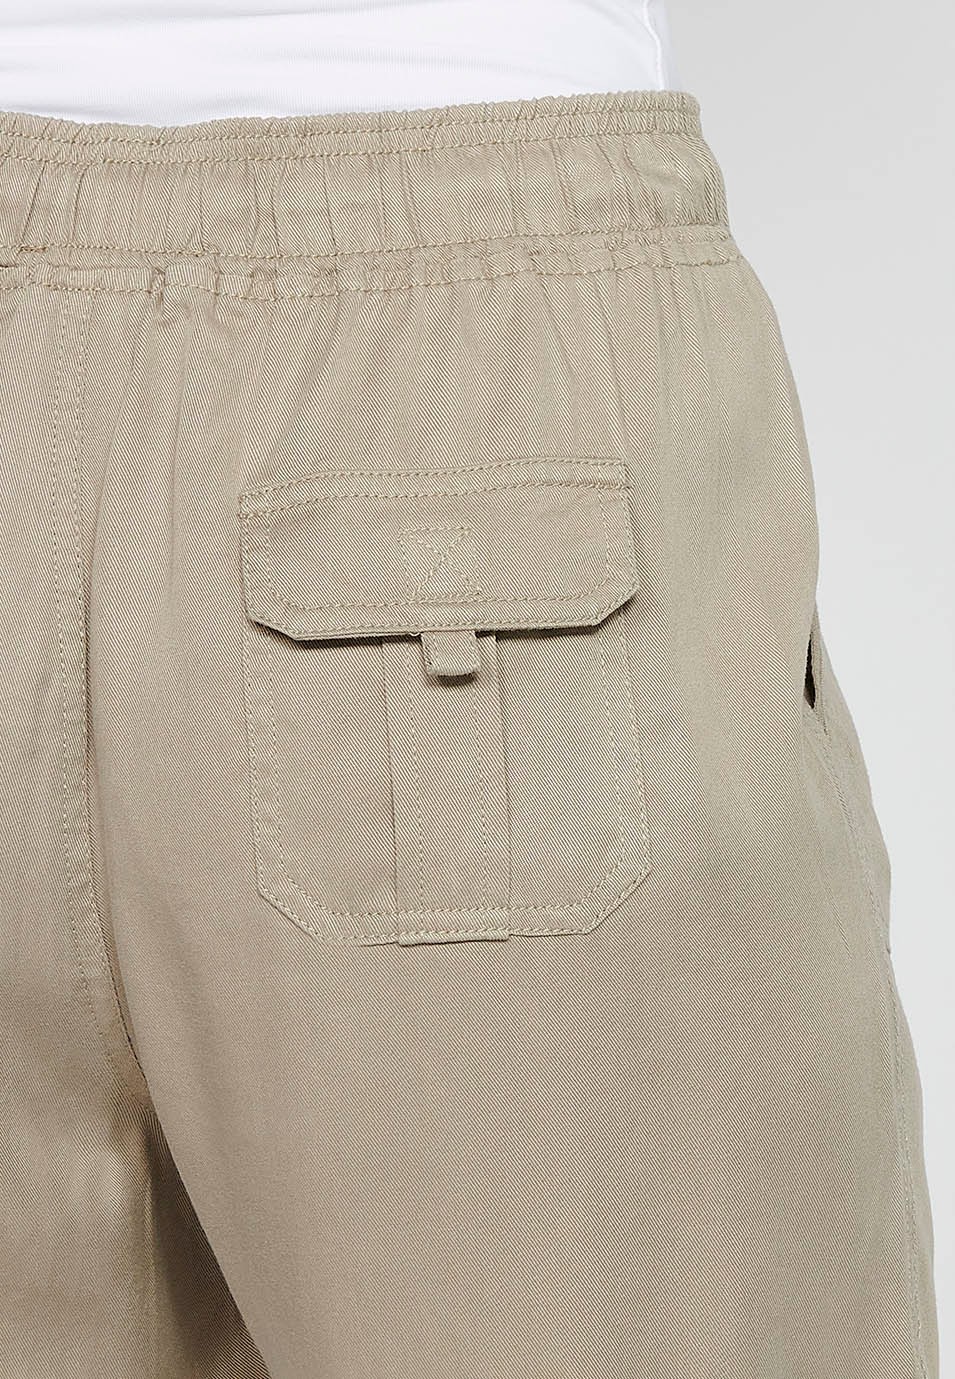 Pantalón largo jogger con Acabado rizado y Cintura engomada con Cuatro bolsillos, dos traseros con solapa de Color Gris para Mujer 10